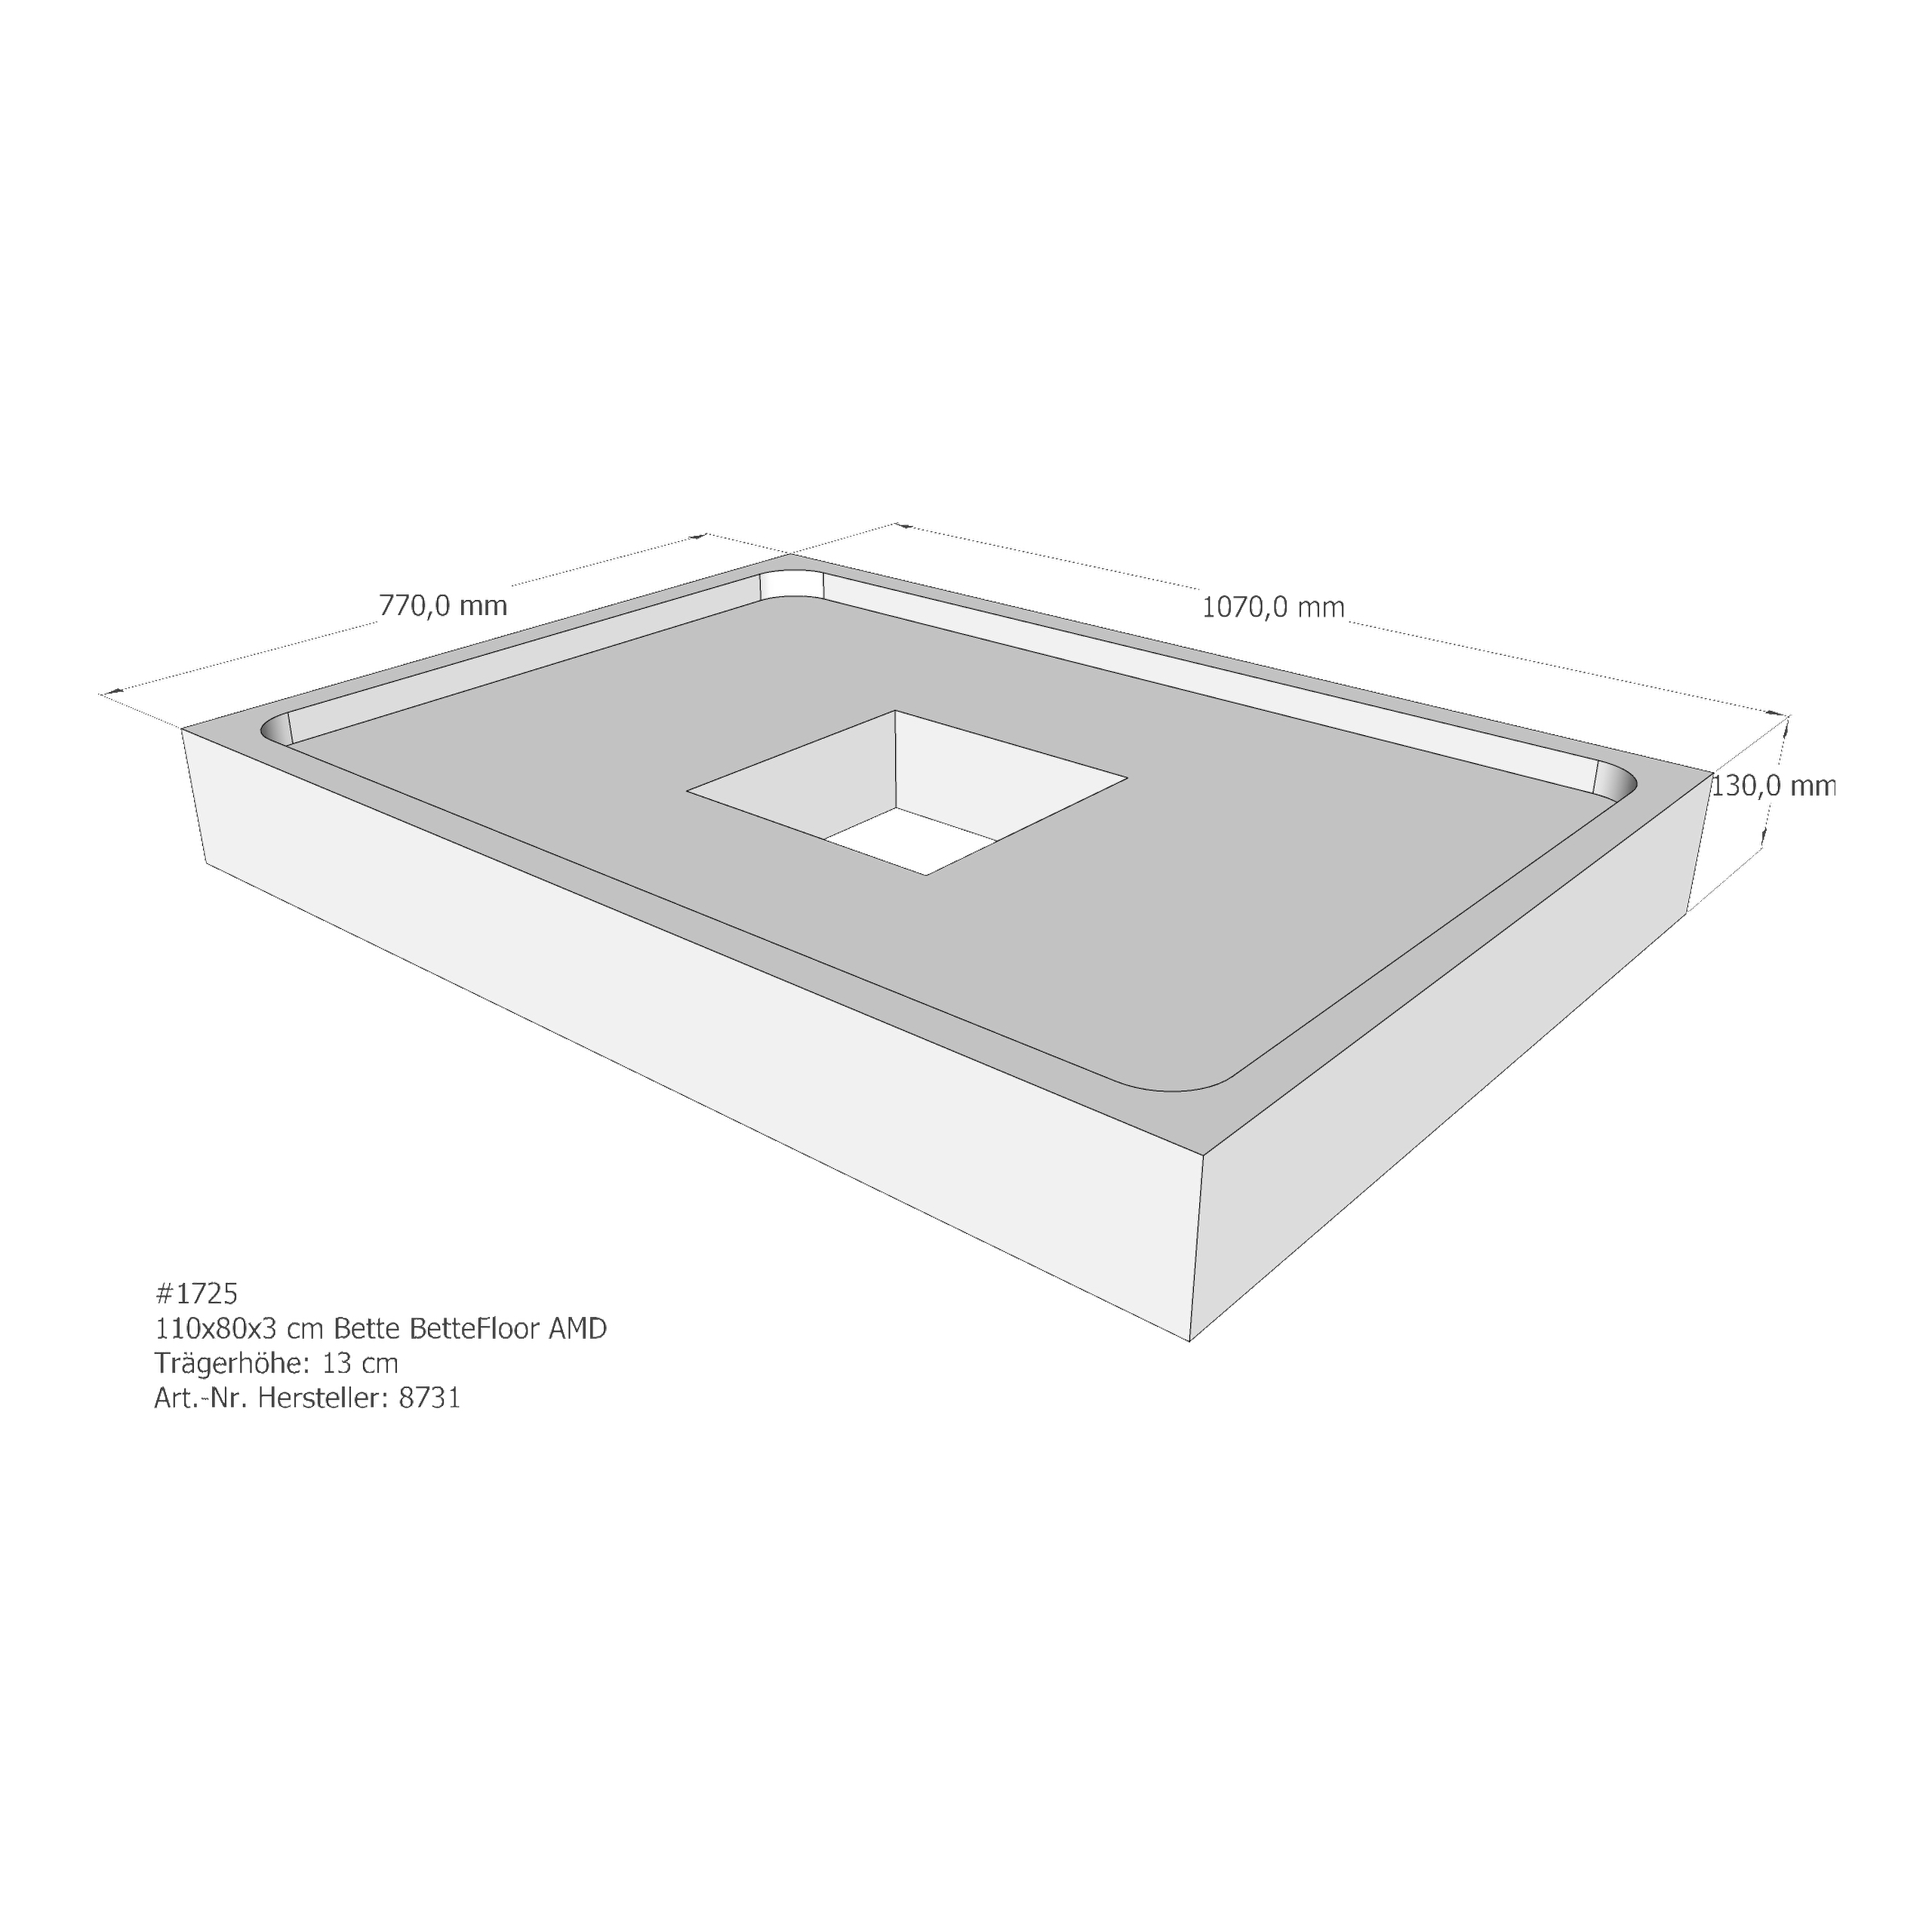 Duschwannenträger Bette BetteFloor 110x80x3 cm AMD